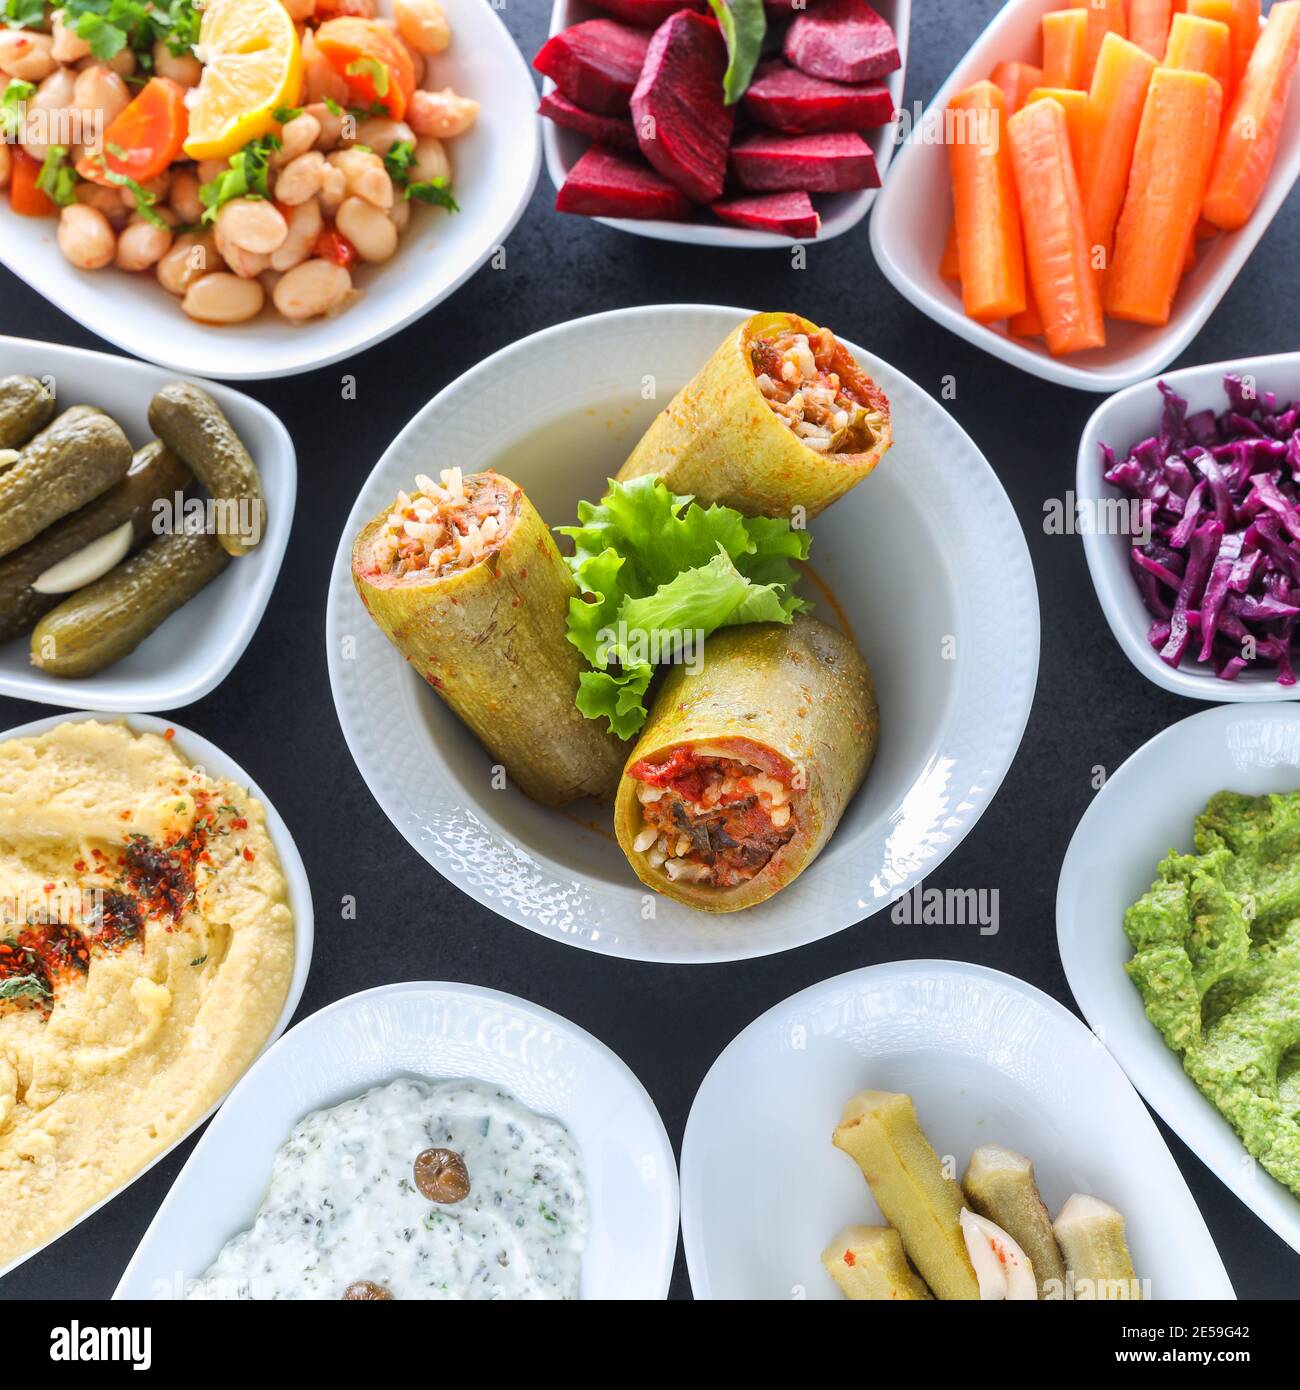 Table de meze traditionnelle turque et grecque avec courgettes farcies, houmous colorés, hors-d'œuvre froids (avec huile d'olive) dans des assiettes blanches. Banque D'Images